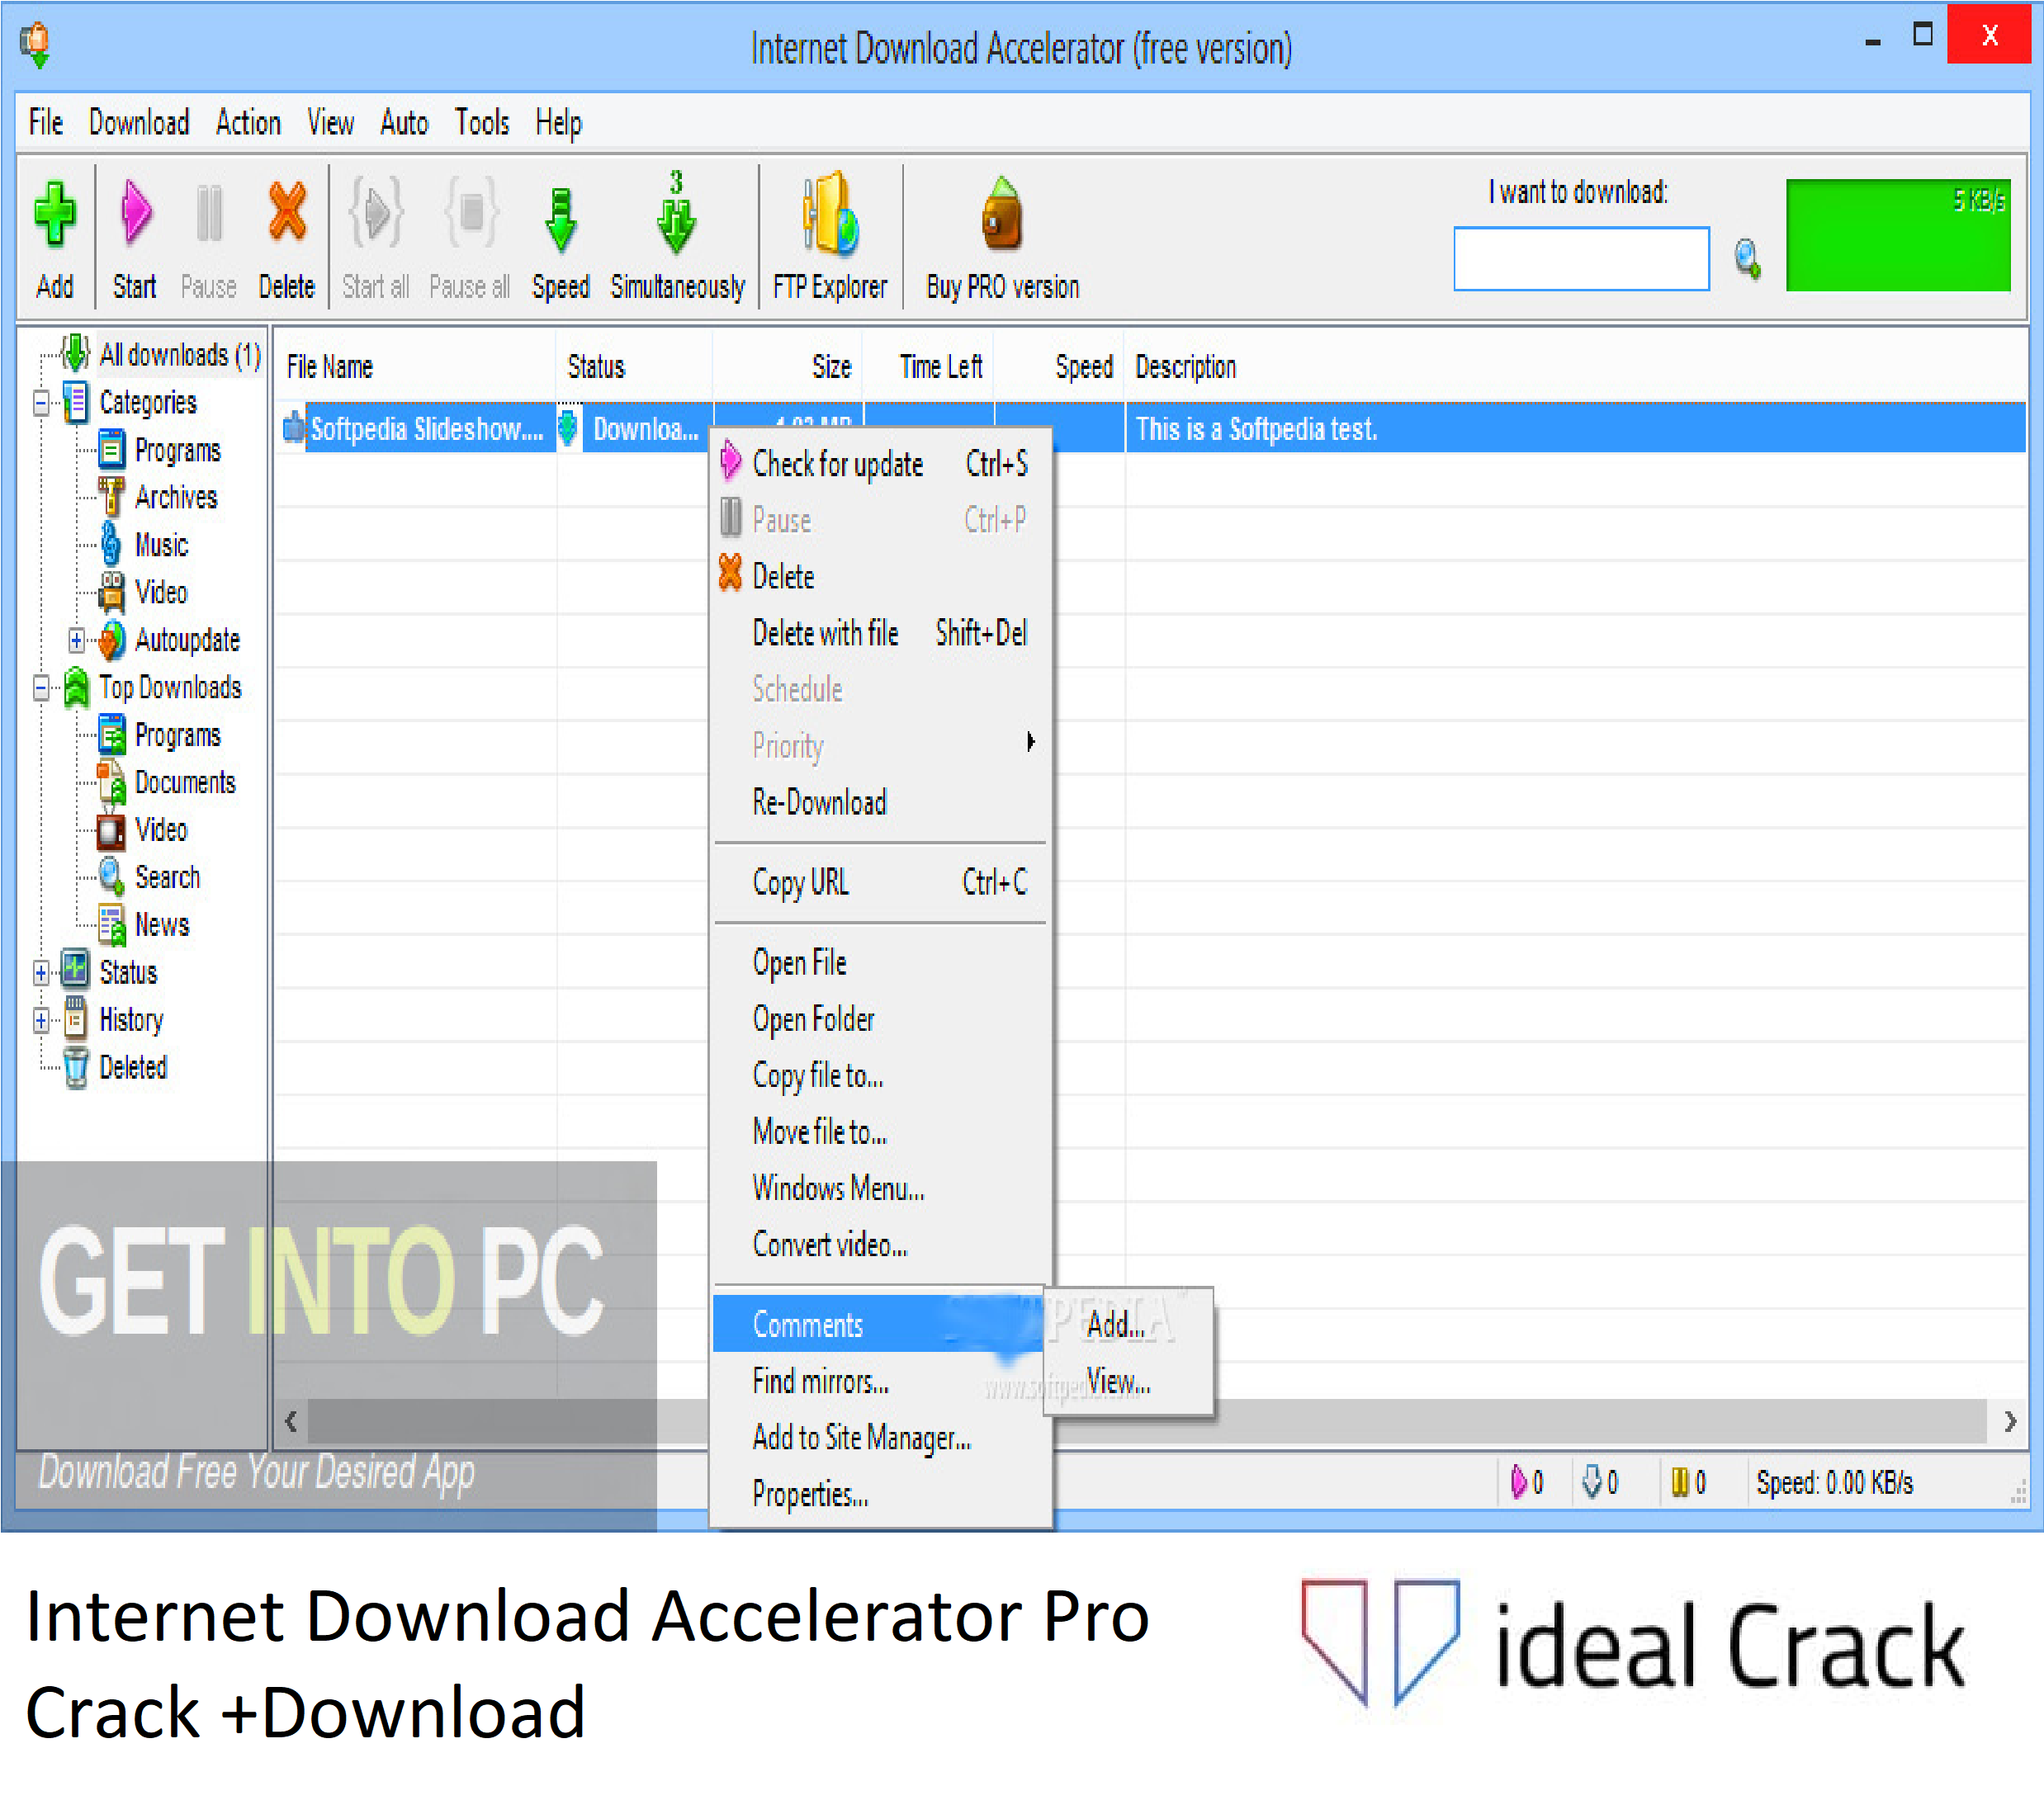 Internet Download Accelerator Pro Crack +Download